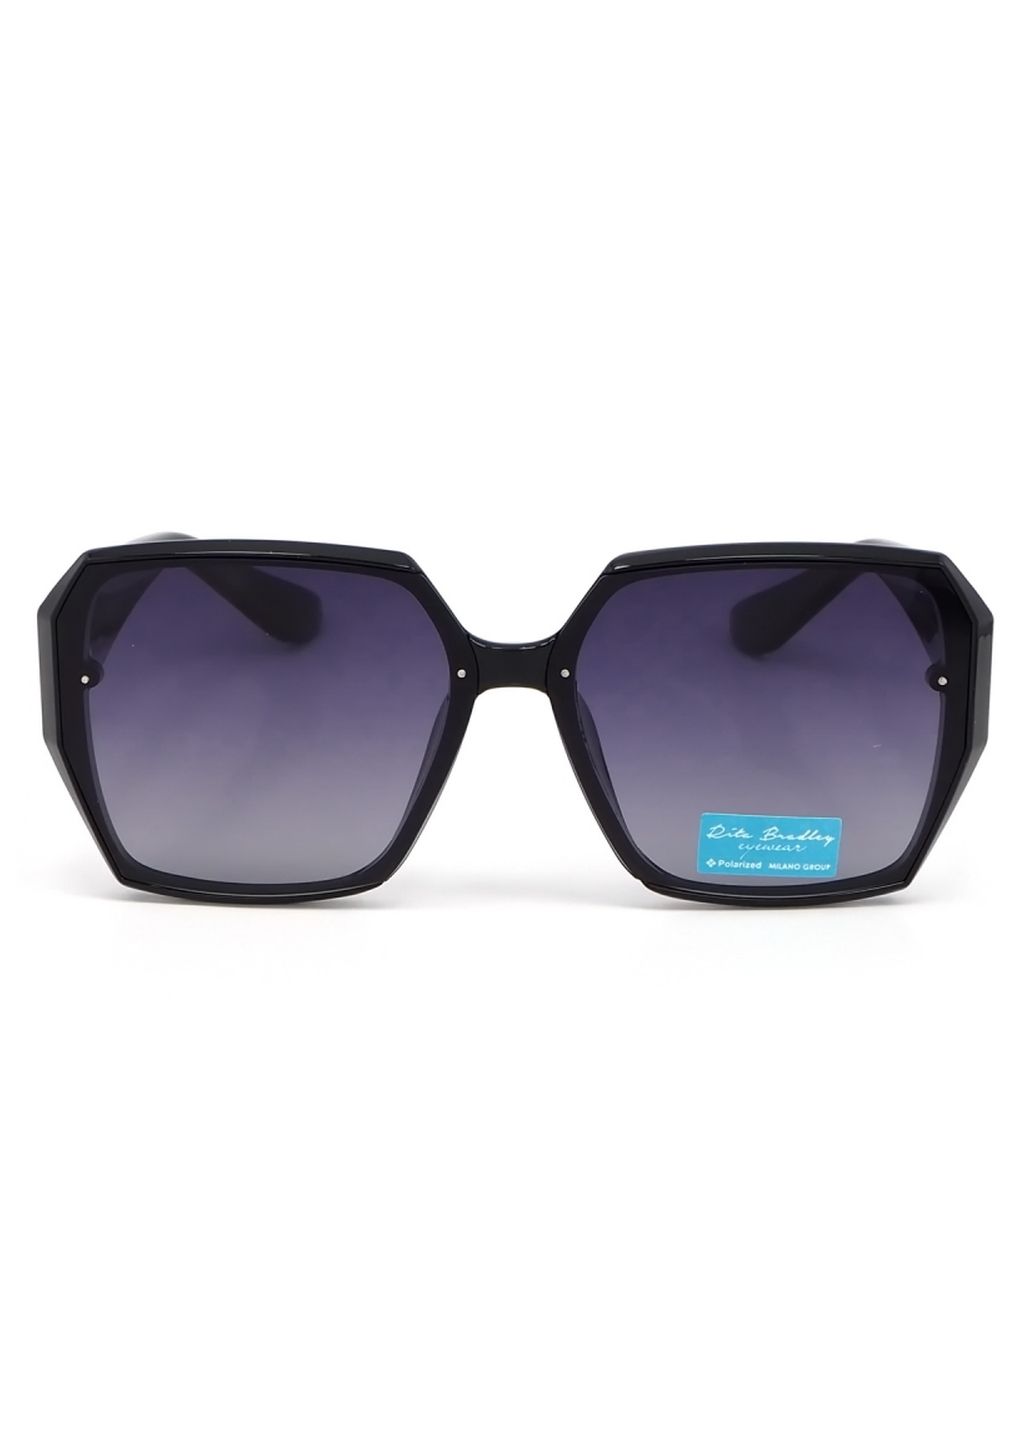 Купить Женские солнцезащитные очки Rita Bradley с поляризацией RB722 112032 в интернет-магазине